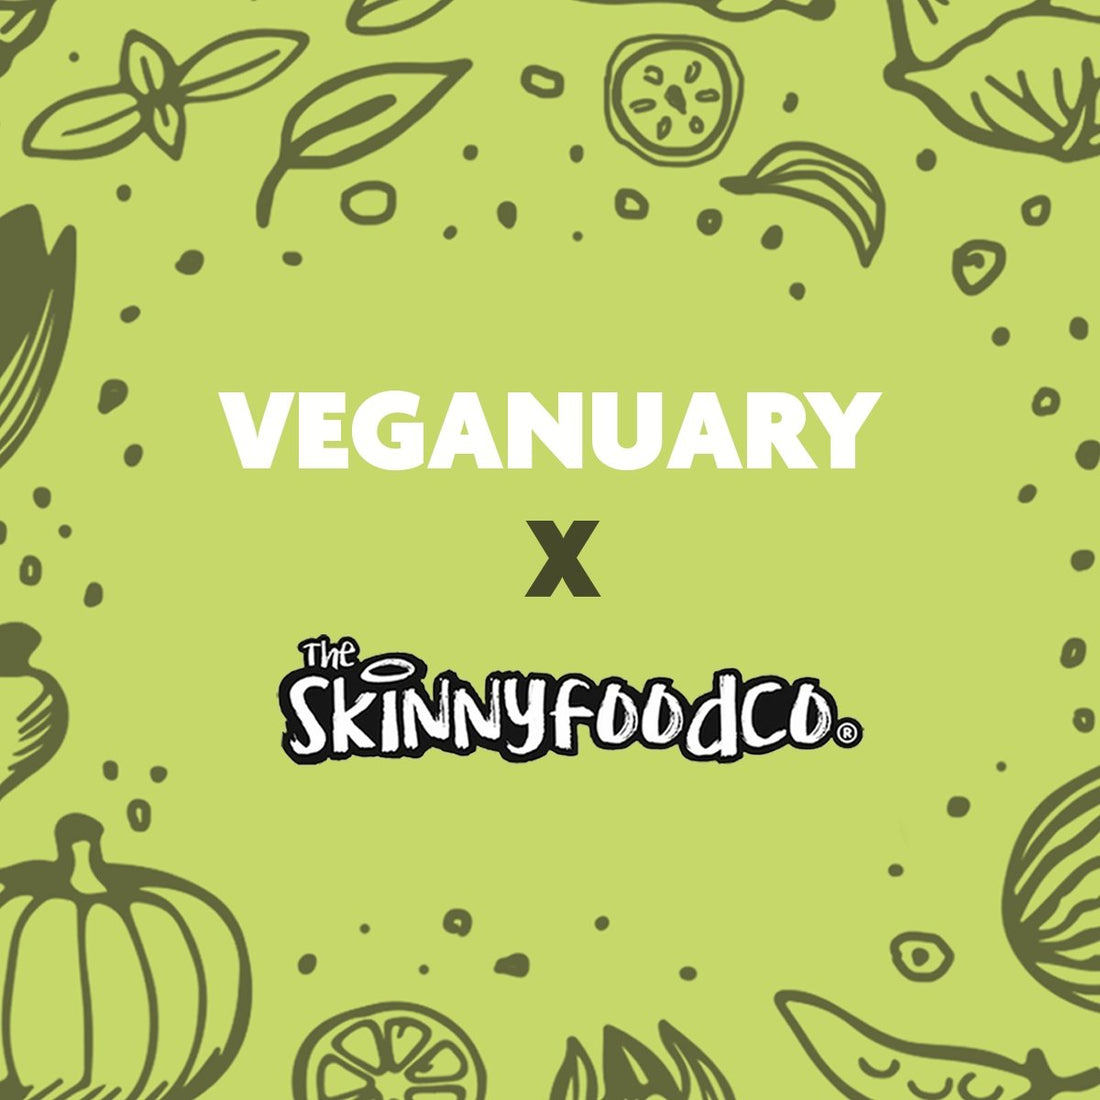 Wat ik op een dag eet: veganistisch met Flo - theskinnyfoodco